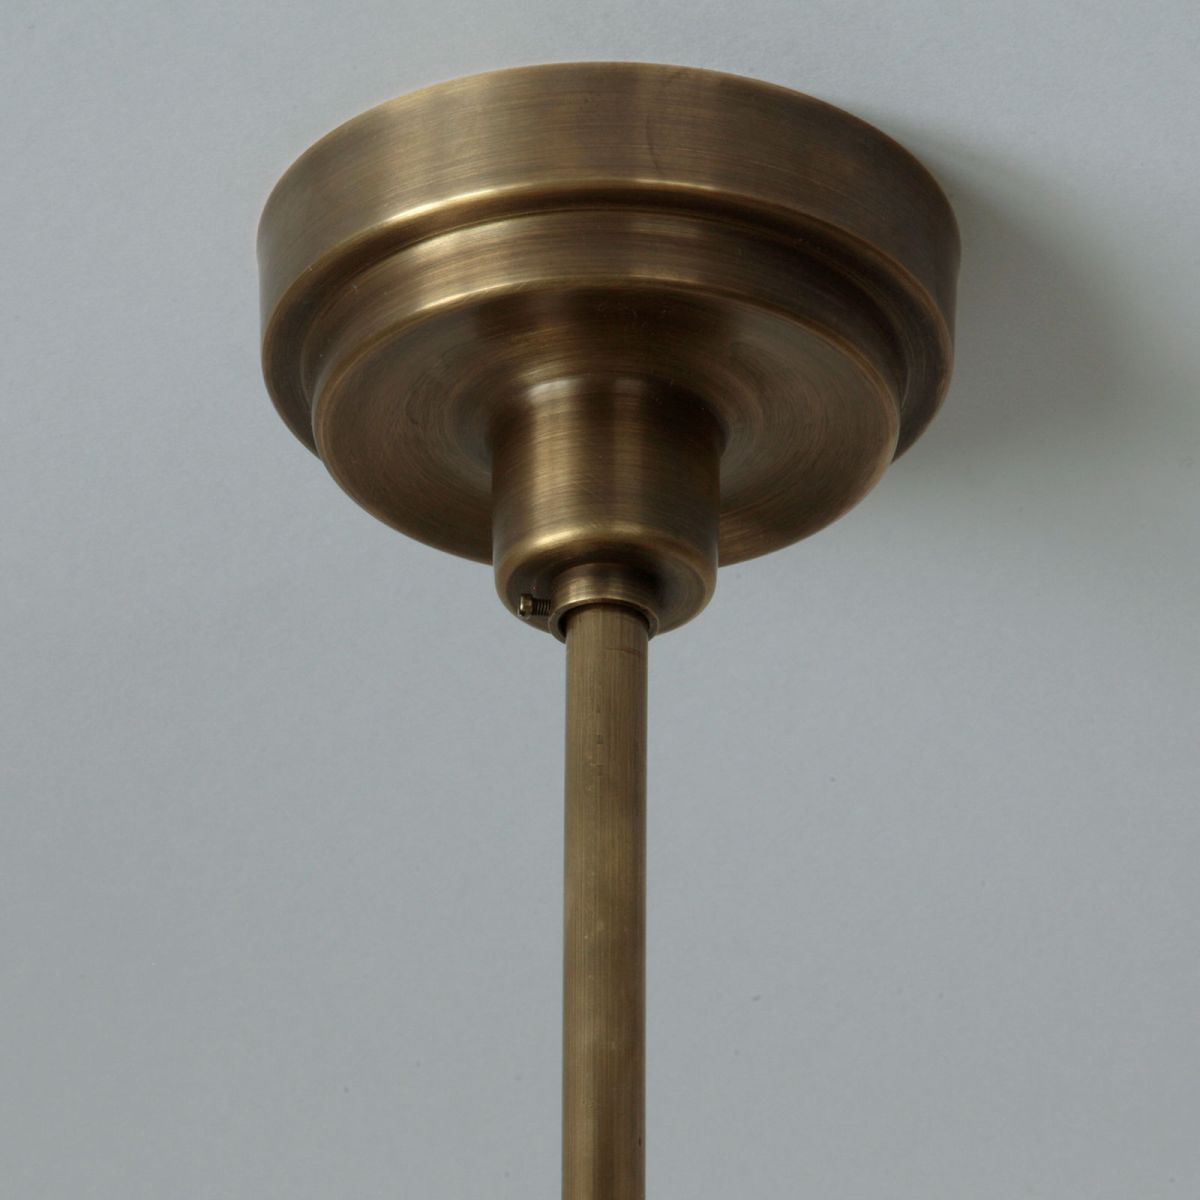 Stab-Pendelleuchte mit Kegelglas Ø 30 cm: Deckenbaldachin, hier antik handpatiniert (Altmessing)